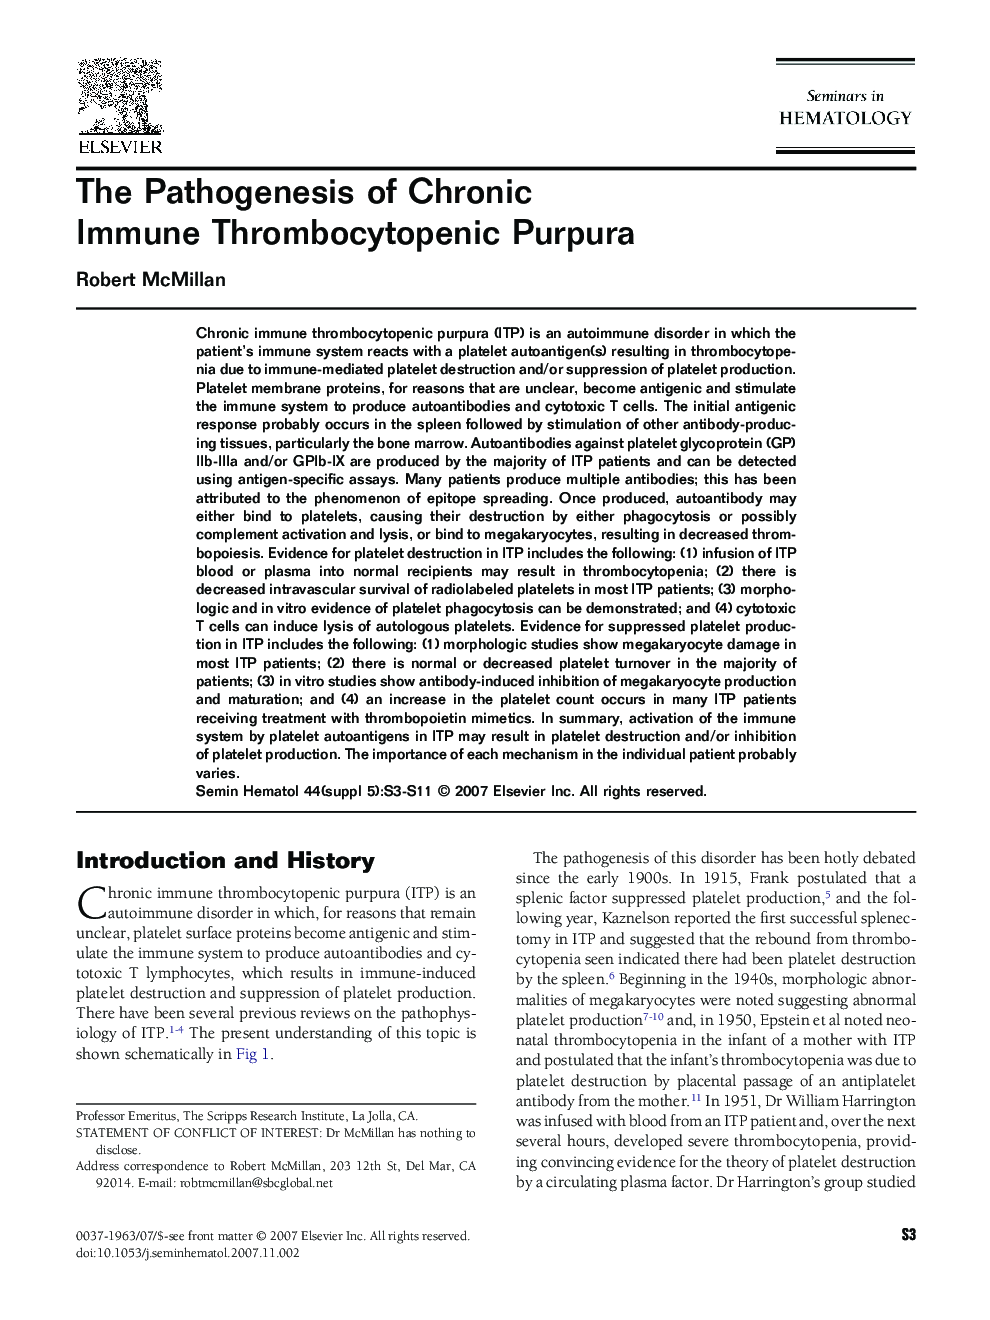 The Pathogenesis of Chronic Immune Thrombocytopenic Purpura 